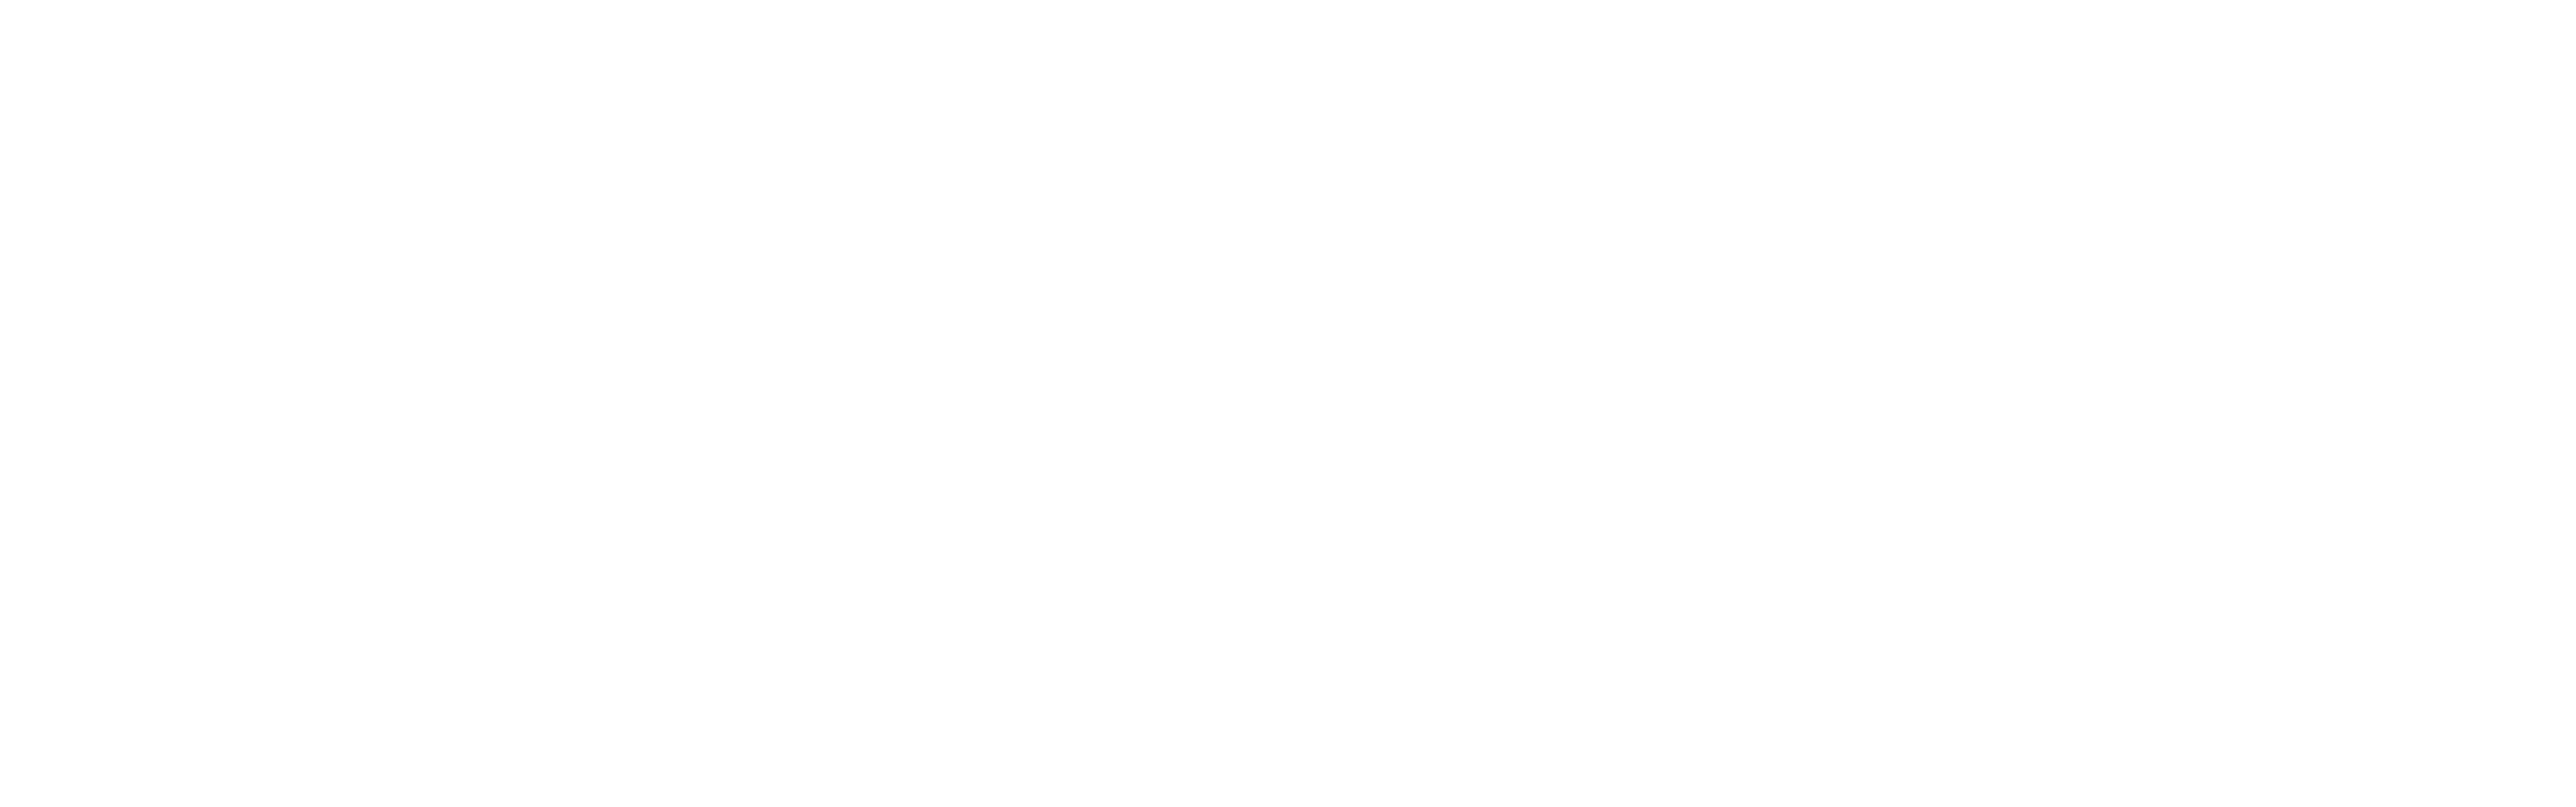 ozz-logo Пояснение по договору на заказ мебели в Мастерской Озз